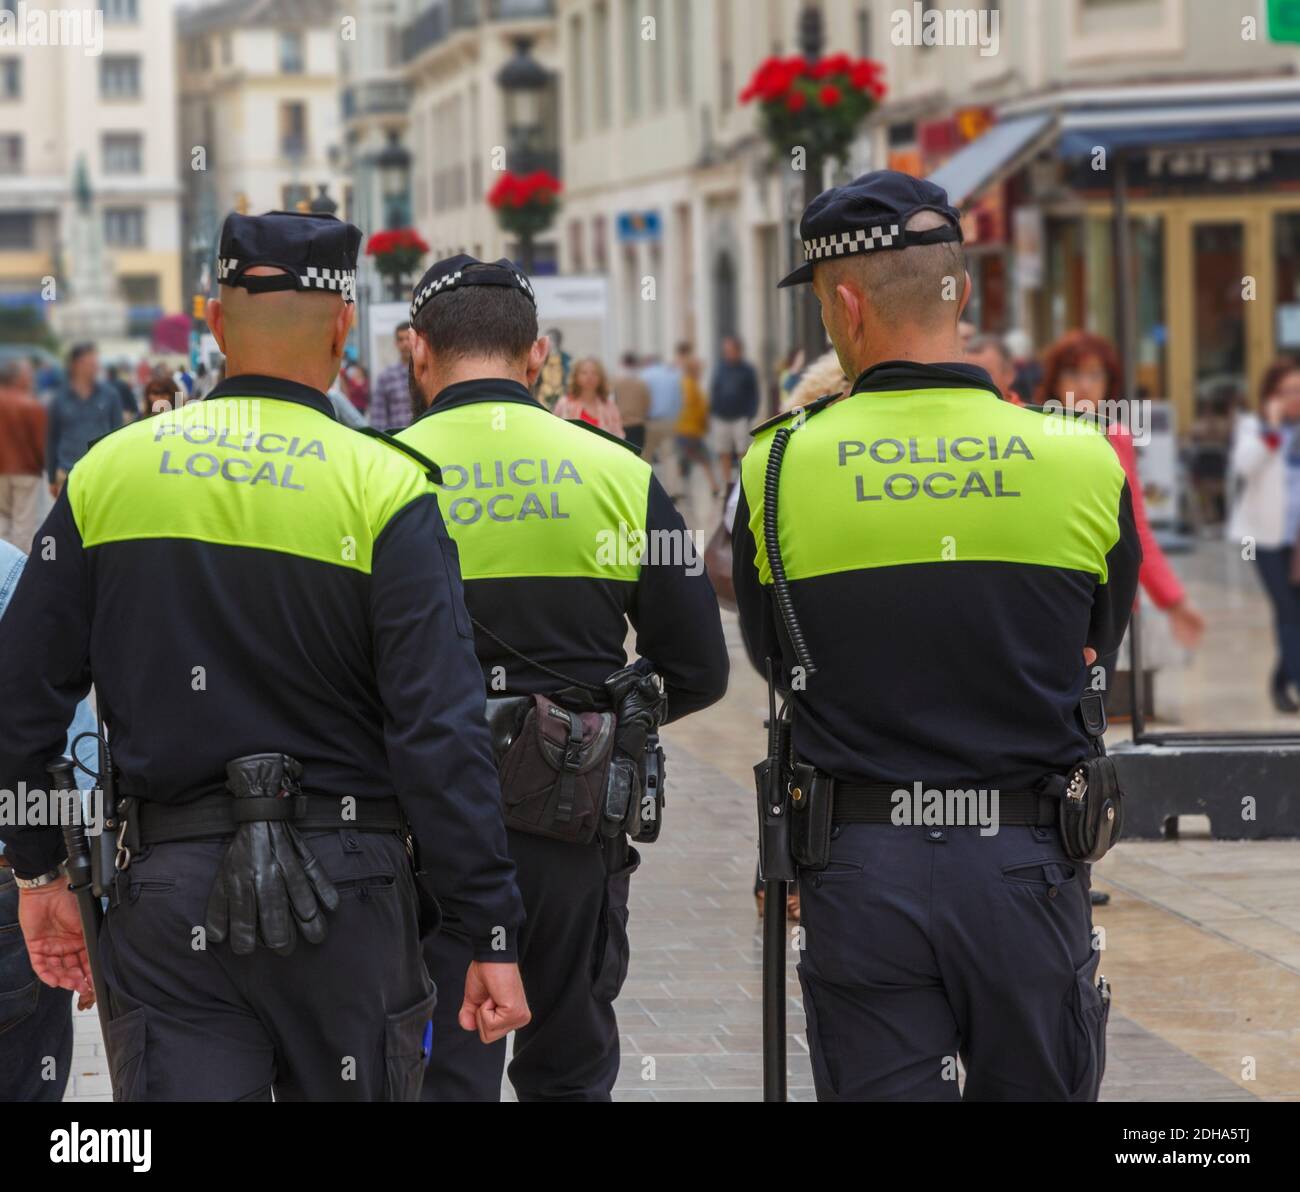 Malaga, Provincia di Malaga, Costa del Sol, Andalusia, Spagna meridionale. Tre Policia locale. Locale, o polizia comunale. Foto Stock